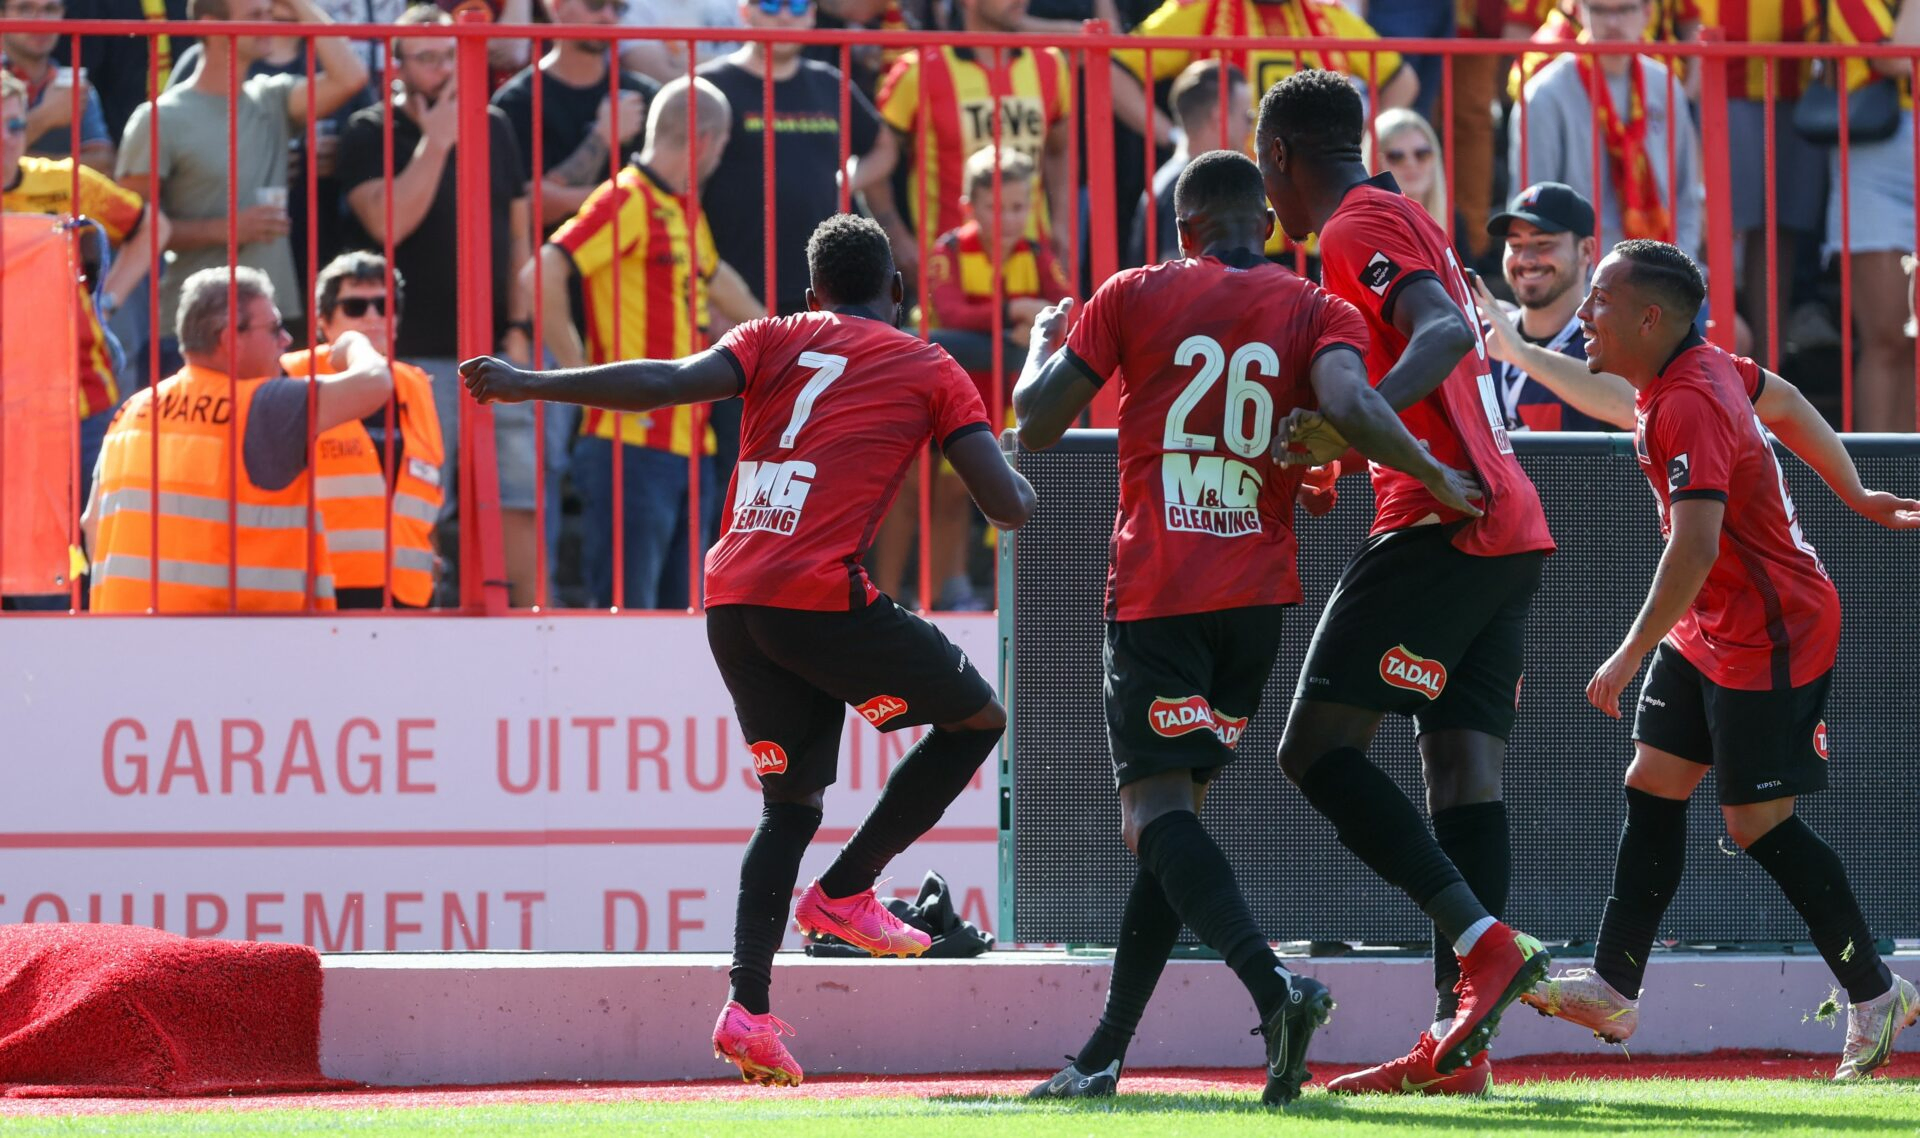 Christophe Mickael Biron du Rwdm célèbre son but lors d'un match de football entre le RWD Molenbeek et le KV Mechelen.